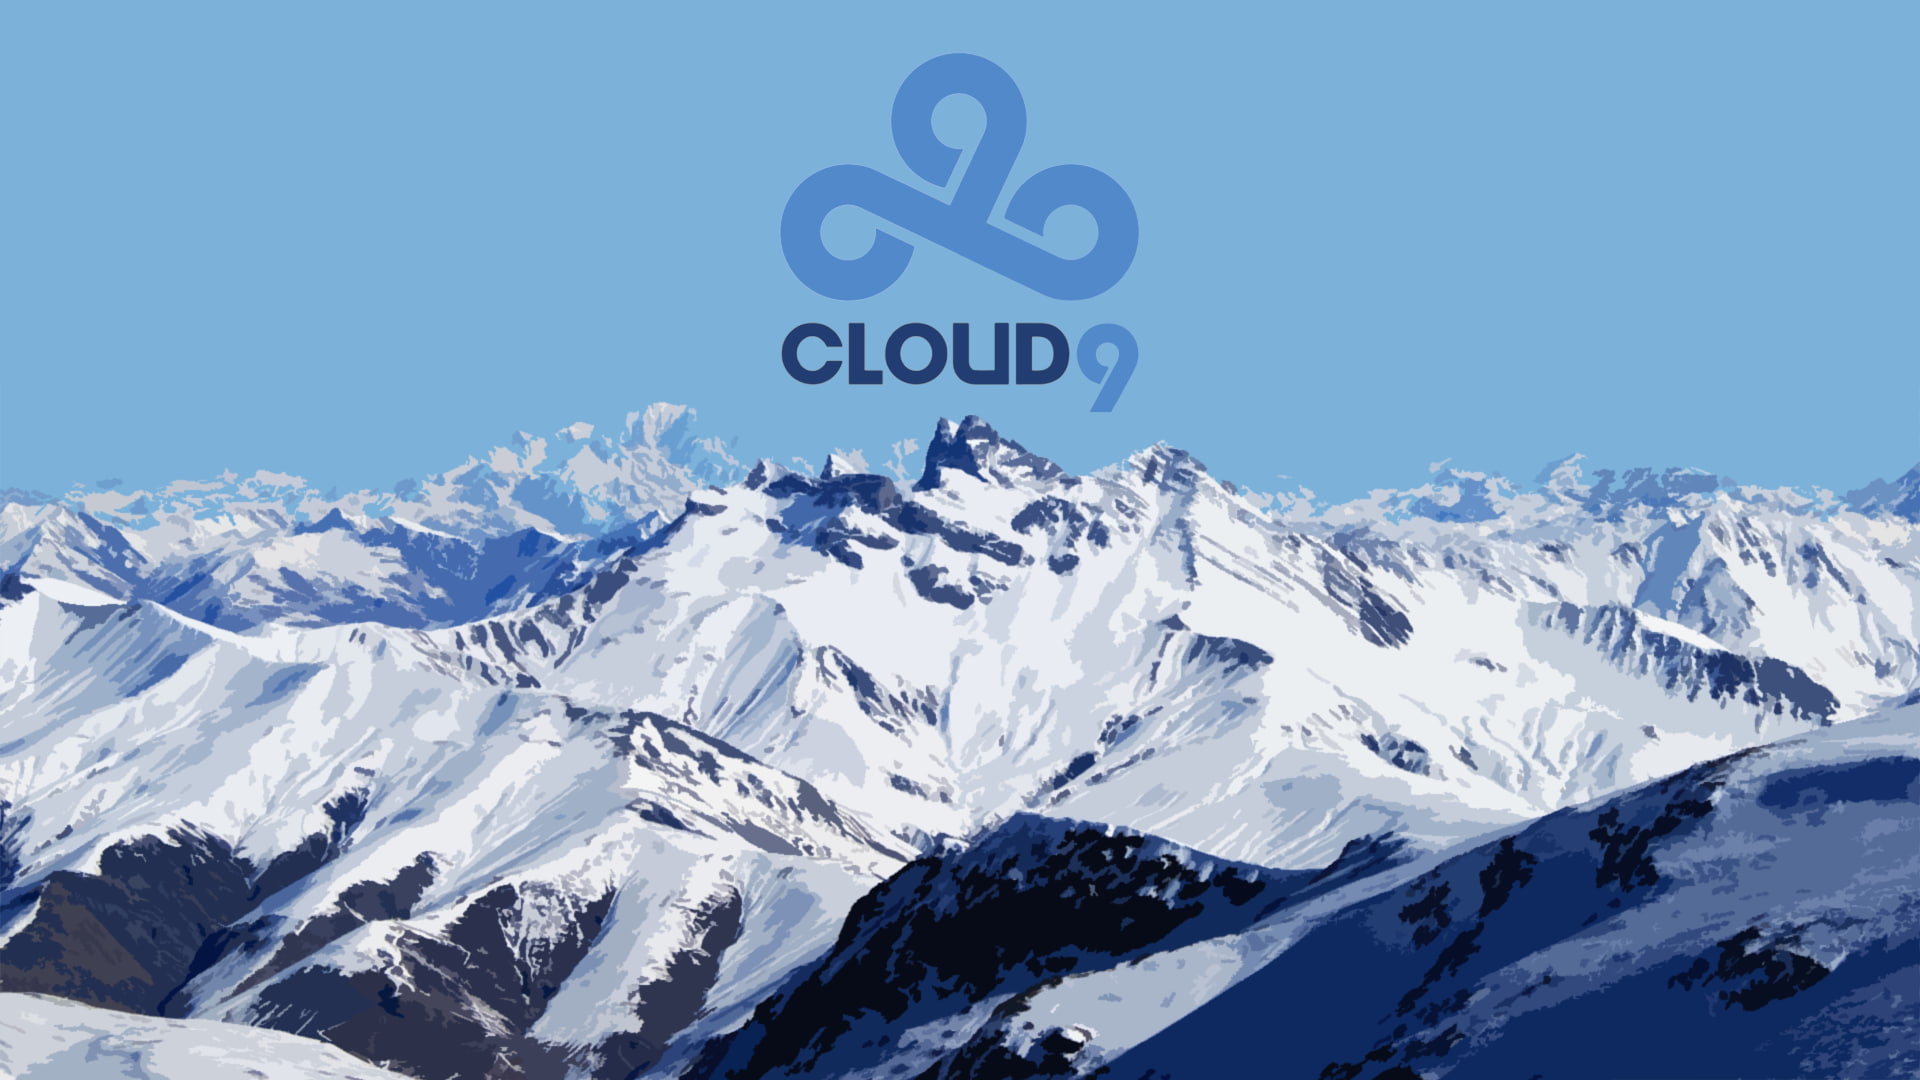 Cloud9, e-sports, snow, cold temperature, winter, mountain